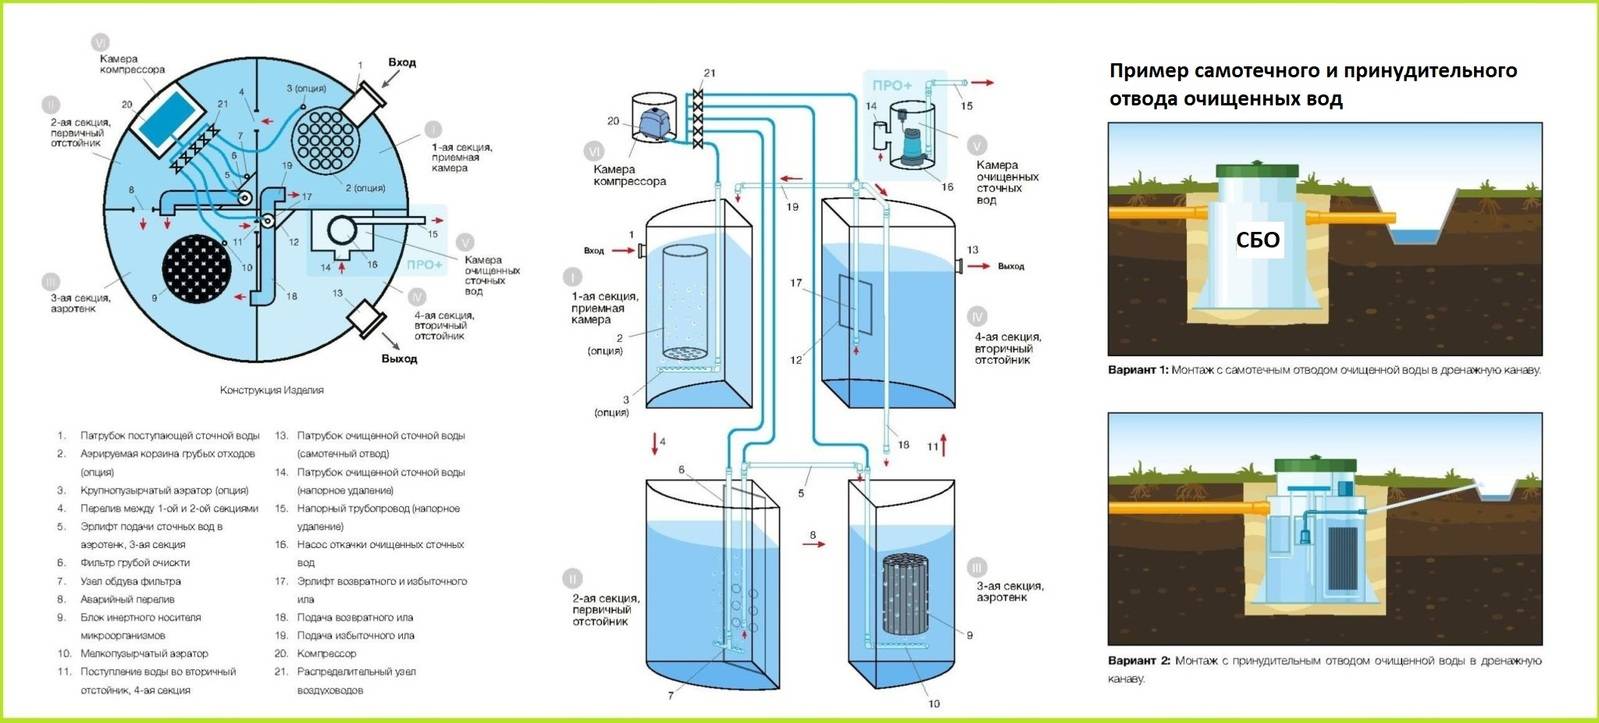 Автономная канализация топас для дачи и загородного дома: отзывы и монтаж